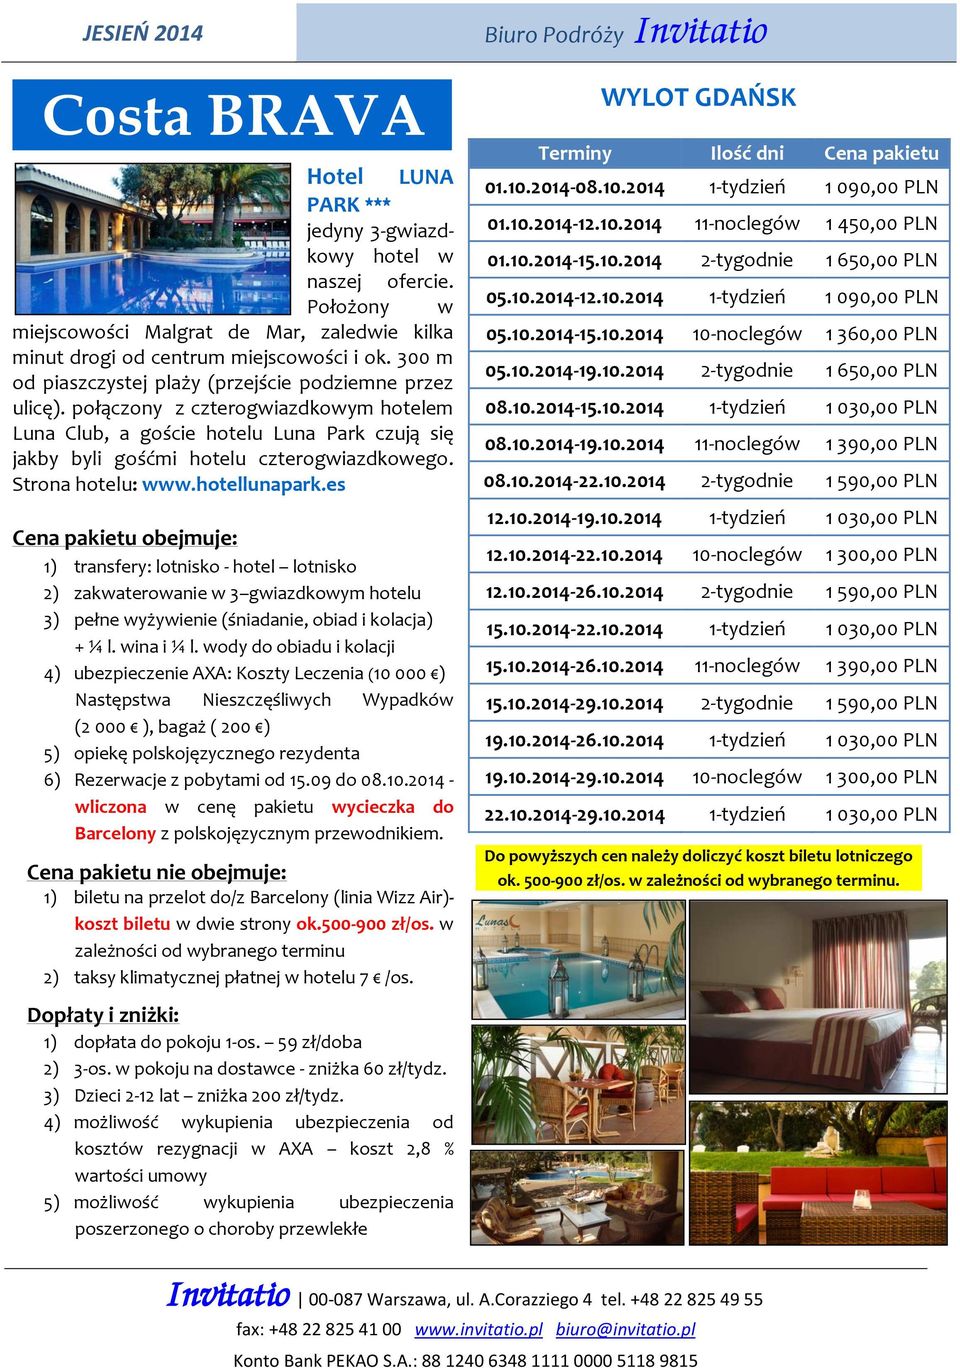 Strona hotelu: www.hotellunapark.es 2) zakwaterowanie w 3 gwiazdkowym hotelu - koszt biletu w dwie strony ok.500-900 zł/os. w zależności od wybranego terminu 1) dopłata do pokoju 1-os.